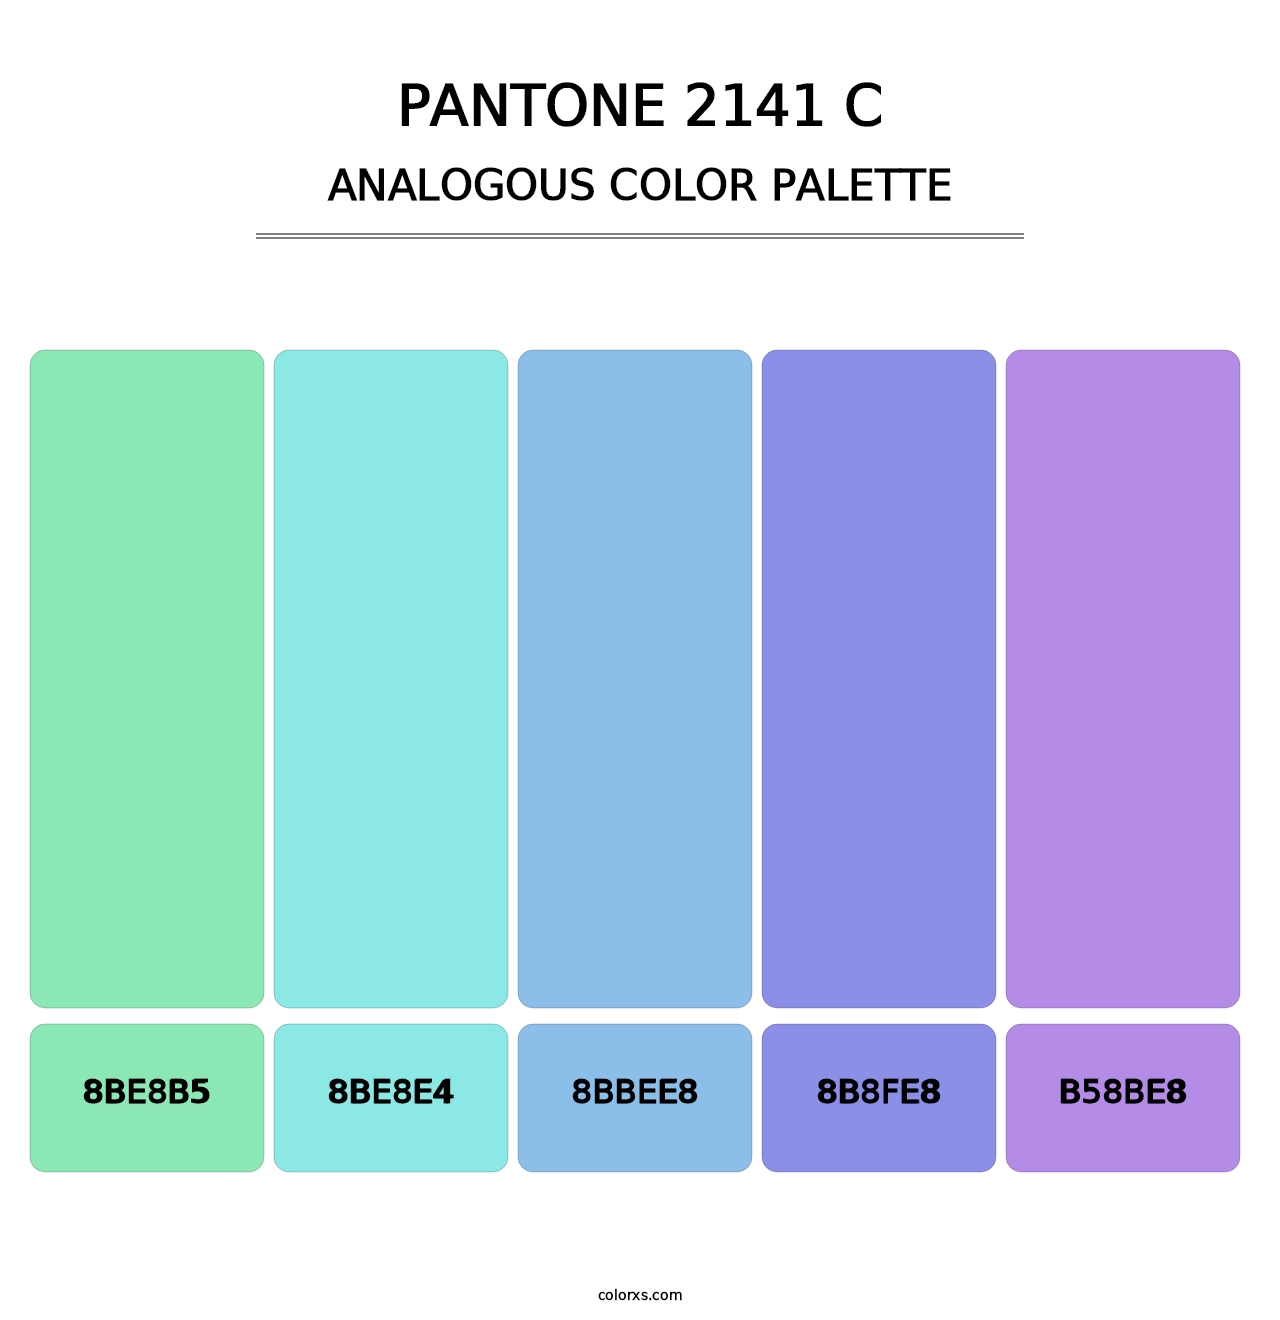 PANTONE 2141 C - Analogous Color Palette